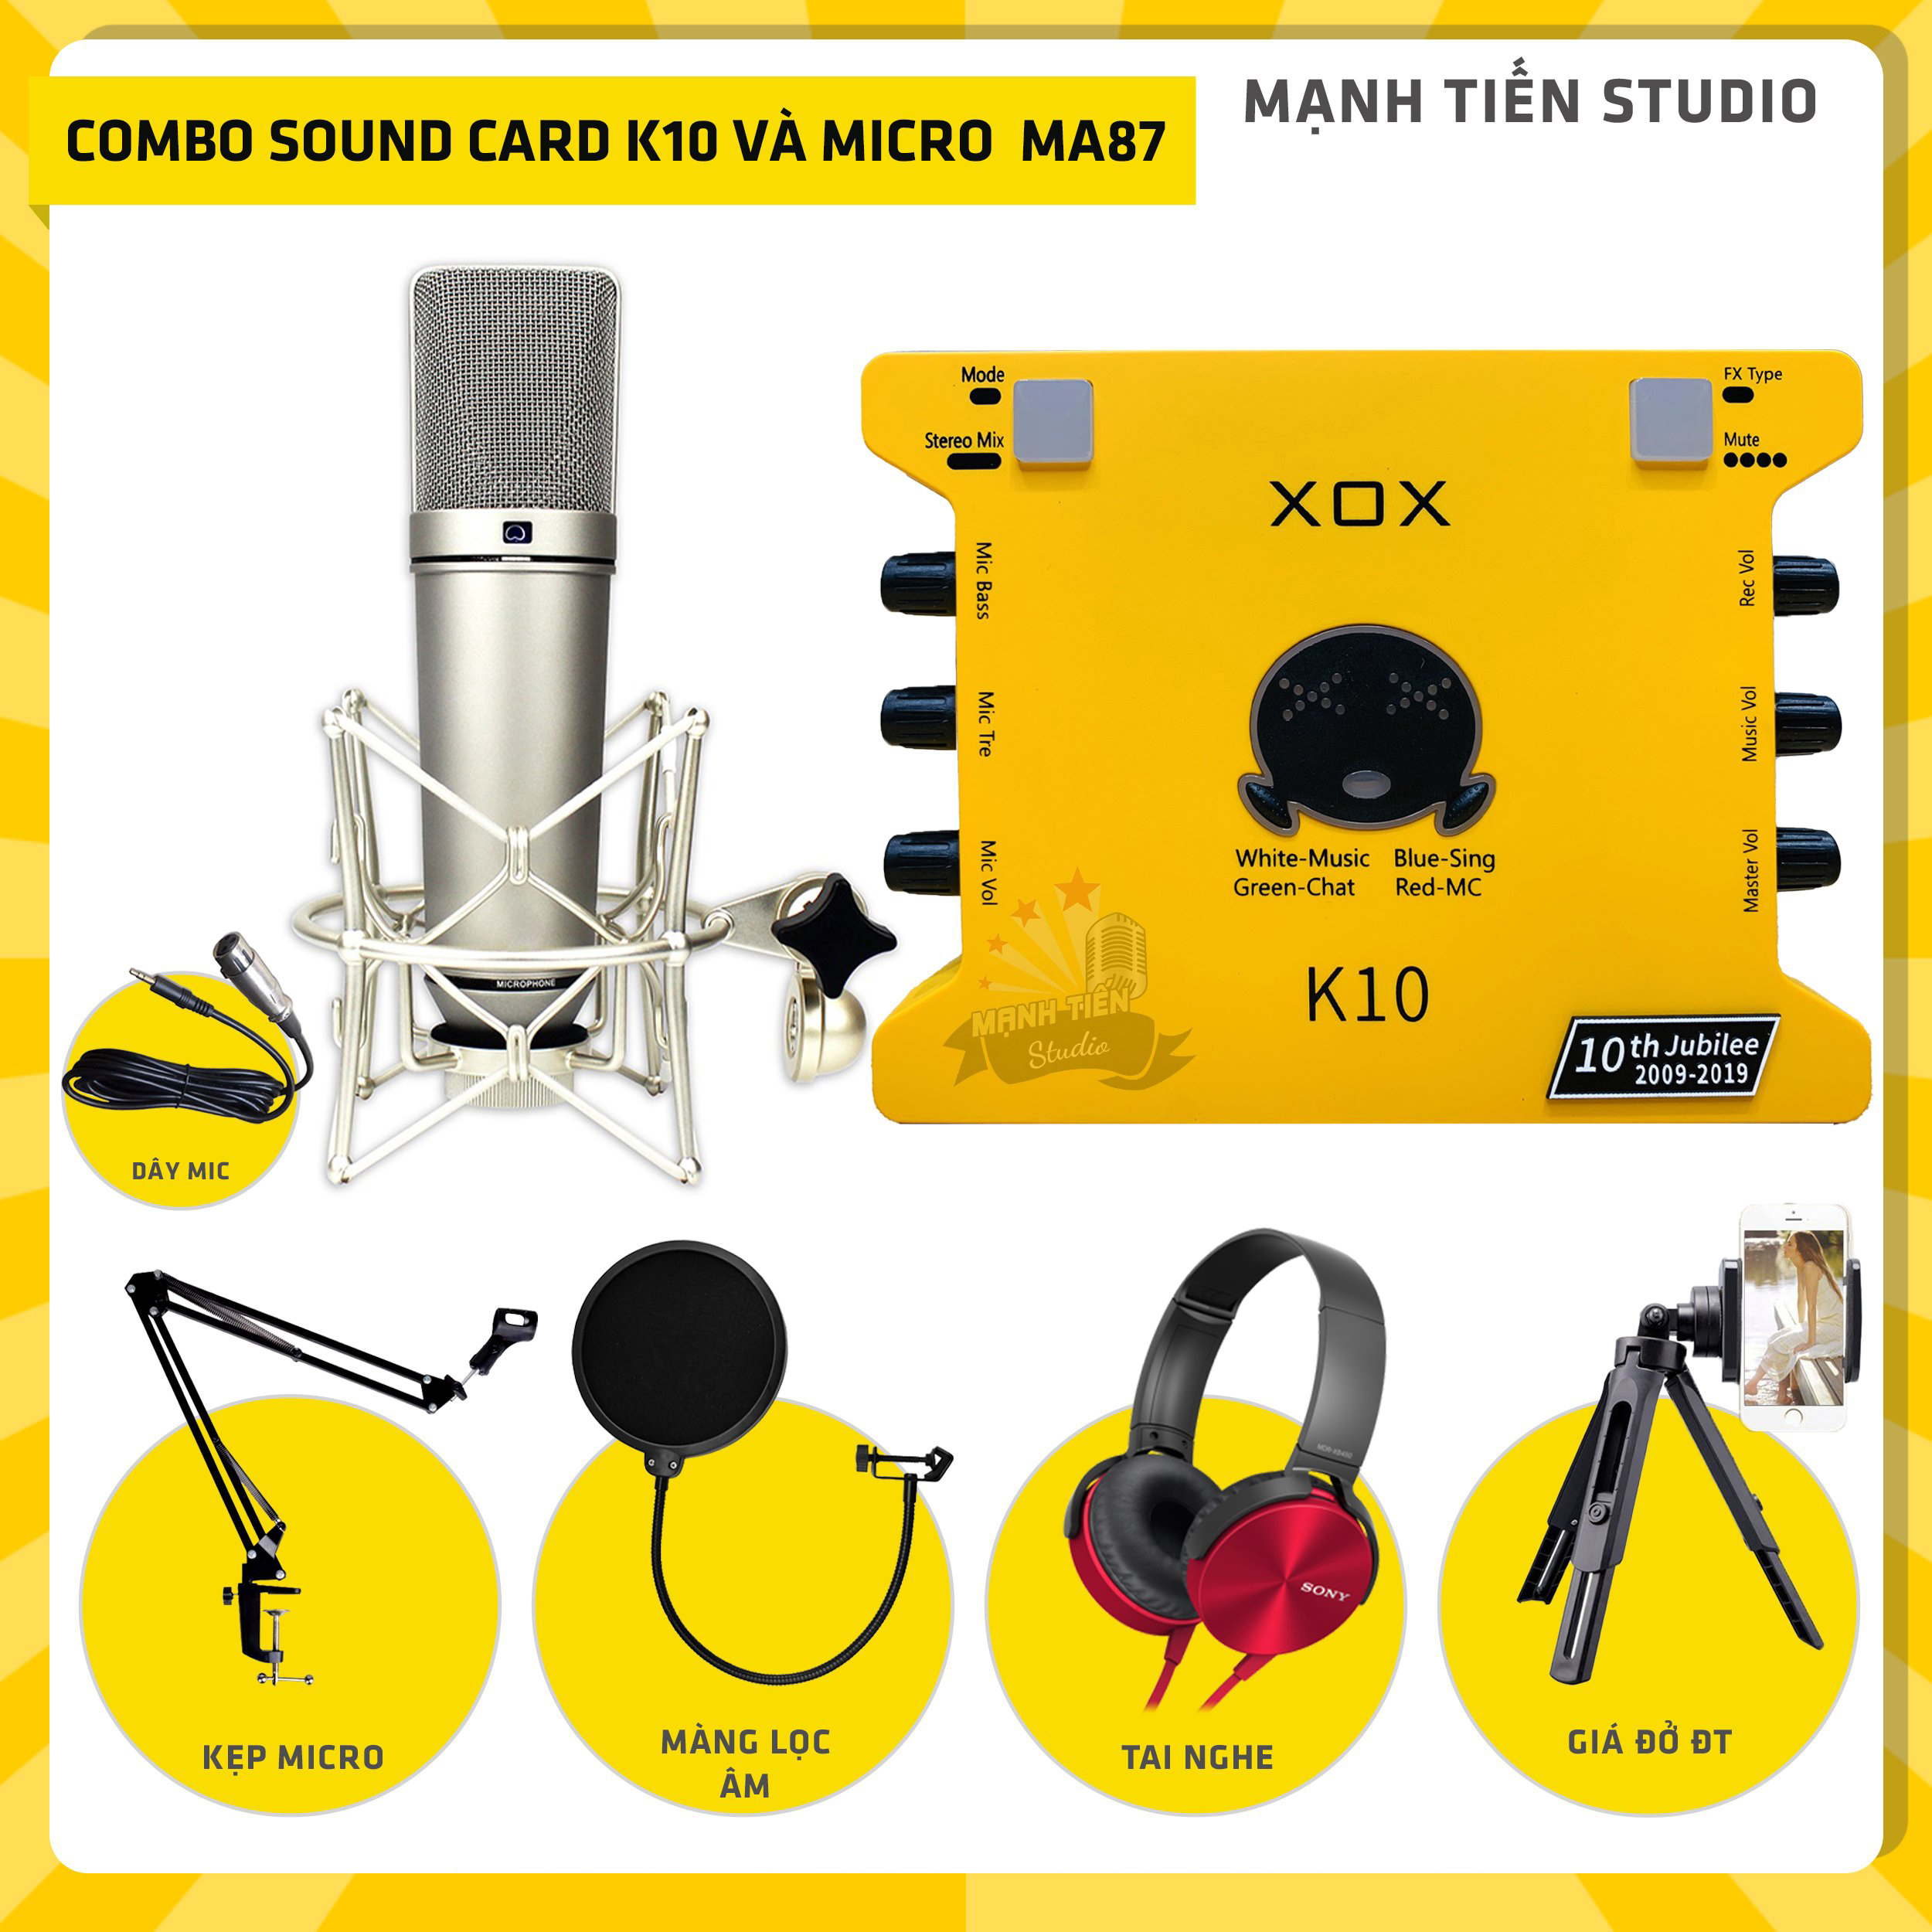 Combo thu âm, livestream Micro AQTA U87-MA, Sound card XOX K10 Jubilee - Kèm full phụ kiện kẹp micro, màng lọc, tai nghe, giá đỡ ĐT - Hỗ trợ thu âm, karaoke online chuyên nghiệp - Hàng nhập khẩu